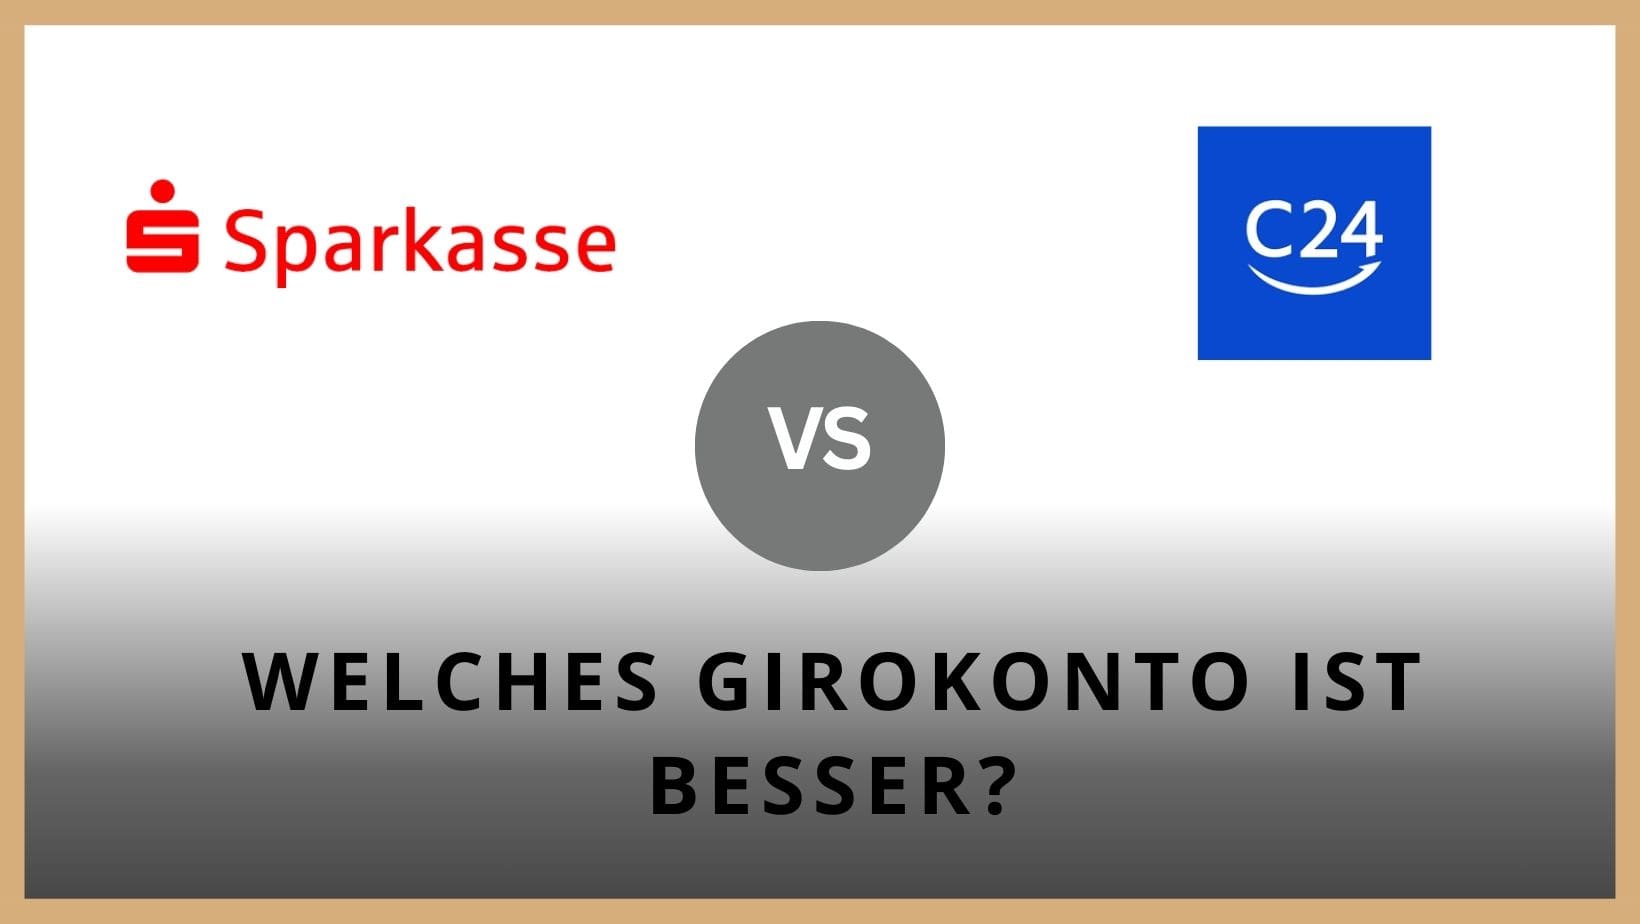 Titelbild zum Beitrag: "Sparkasse vs C24 - Girokonten im Vergleich"